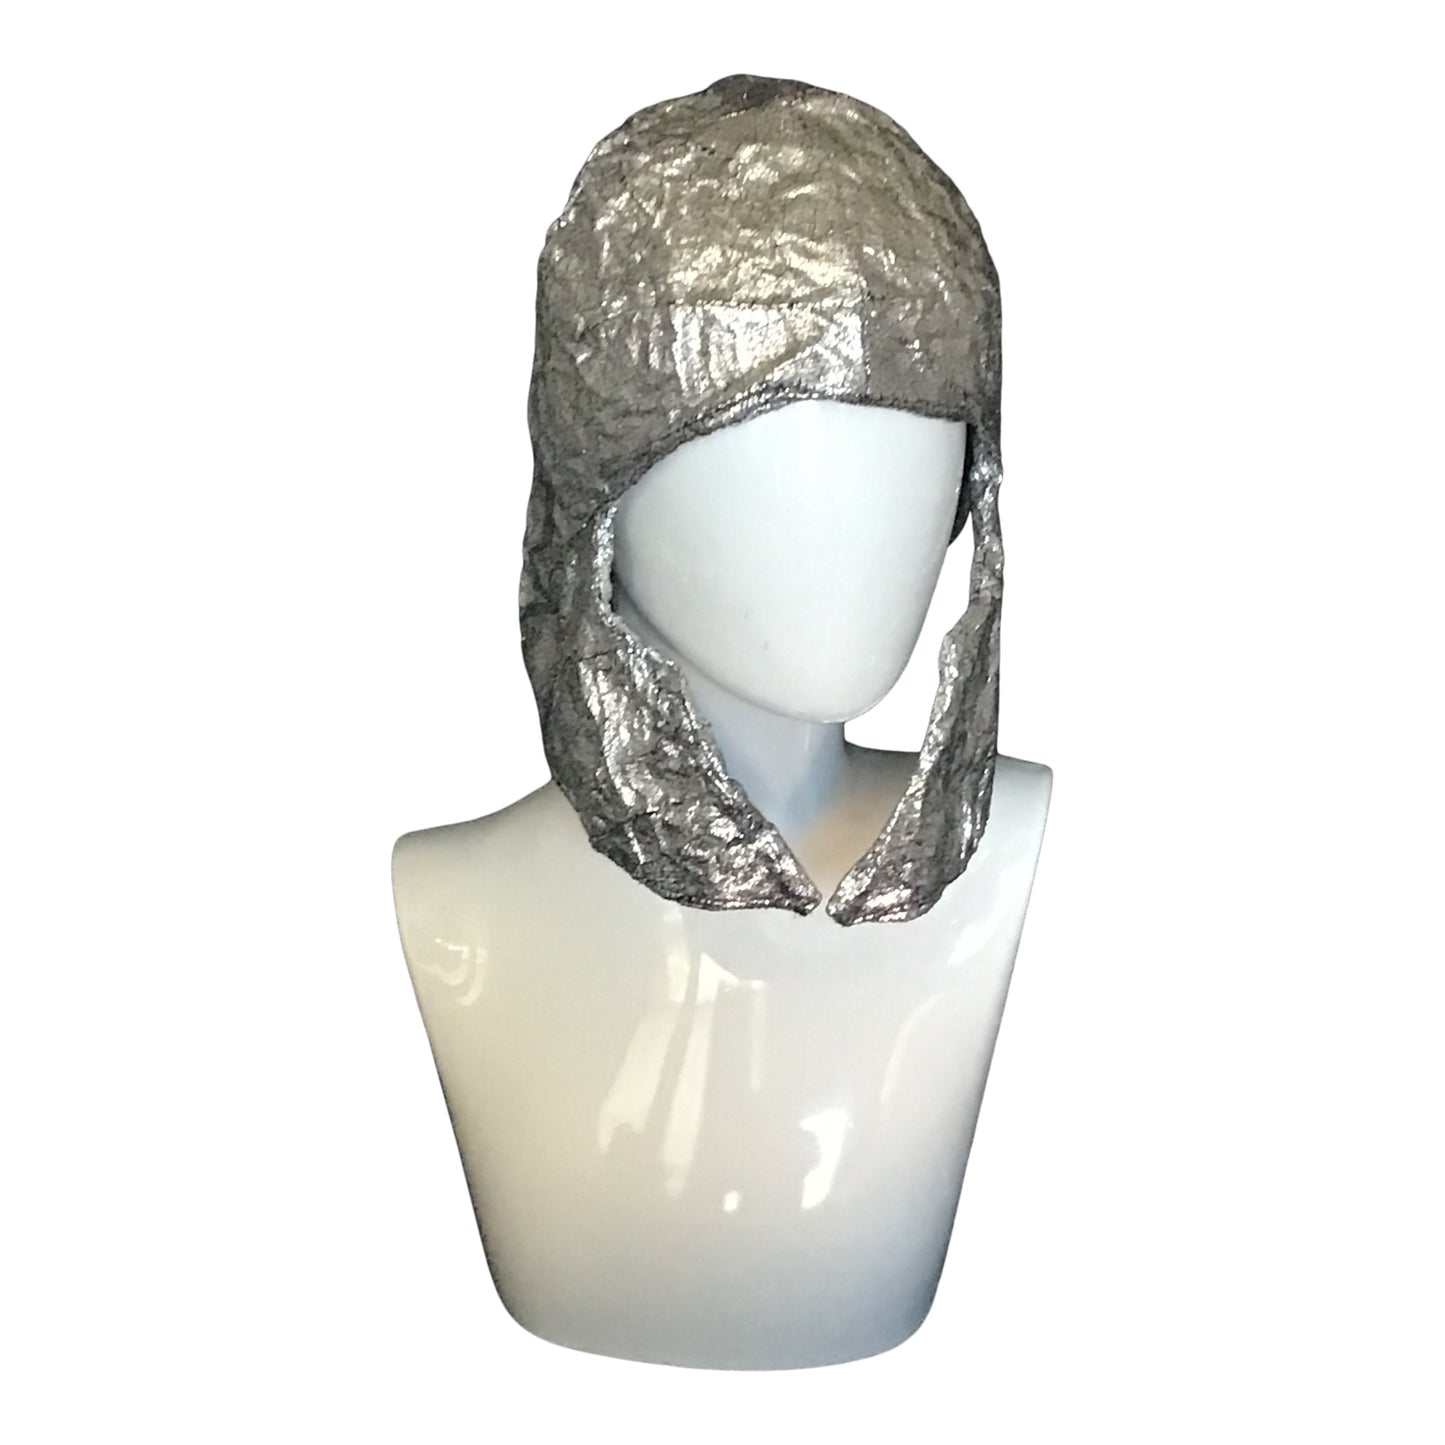 Morphy silver metallic helmet